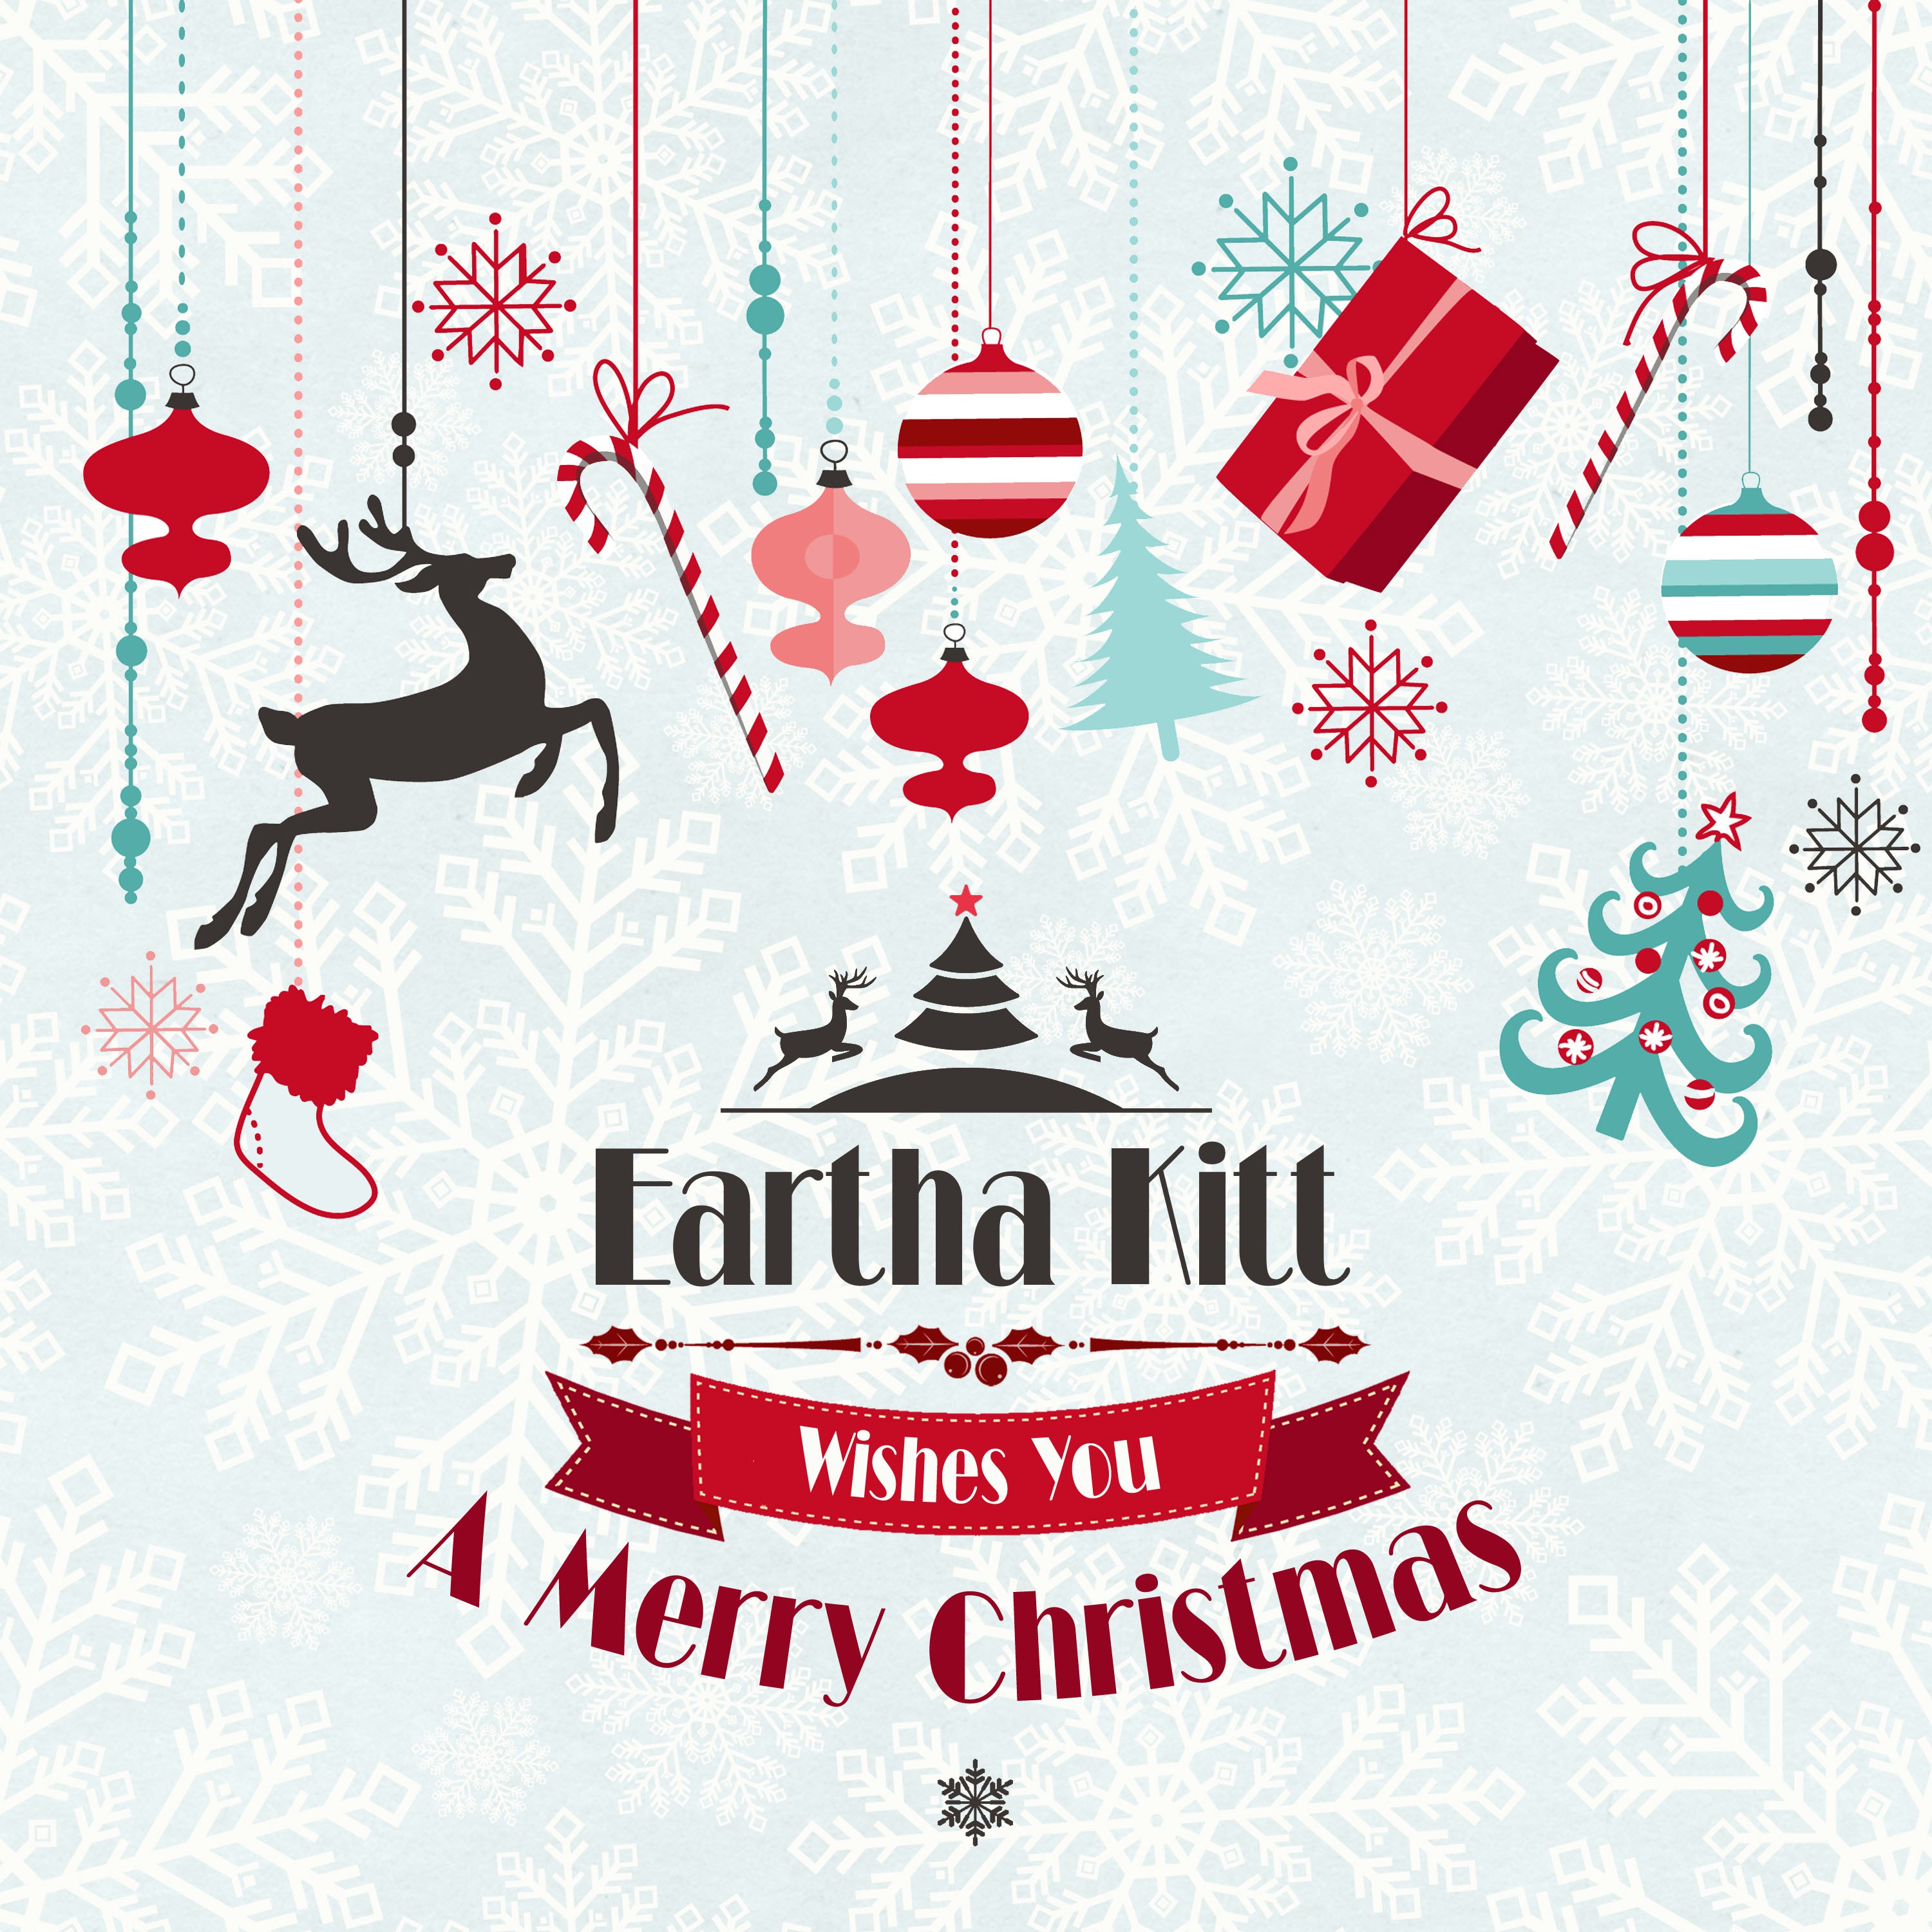 Eartha Kitt Wishes You a Merry Christmas